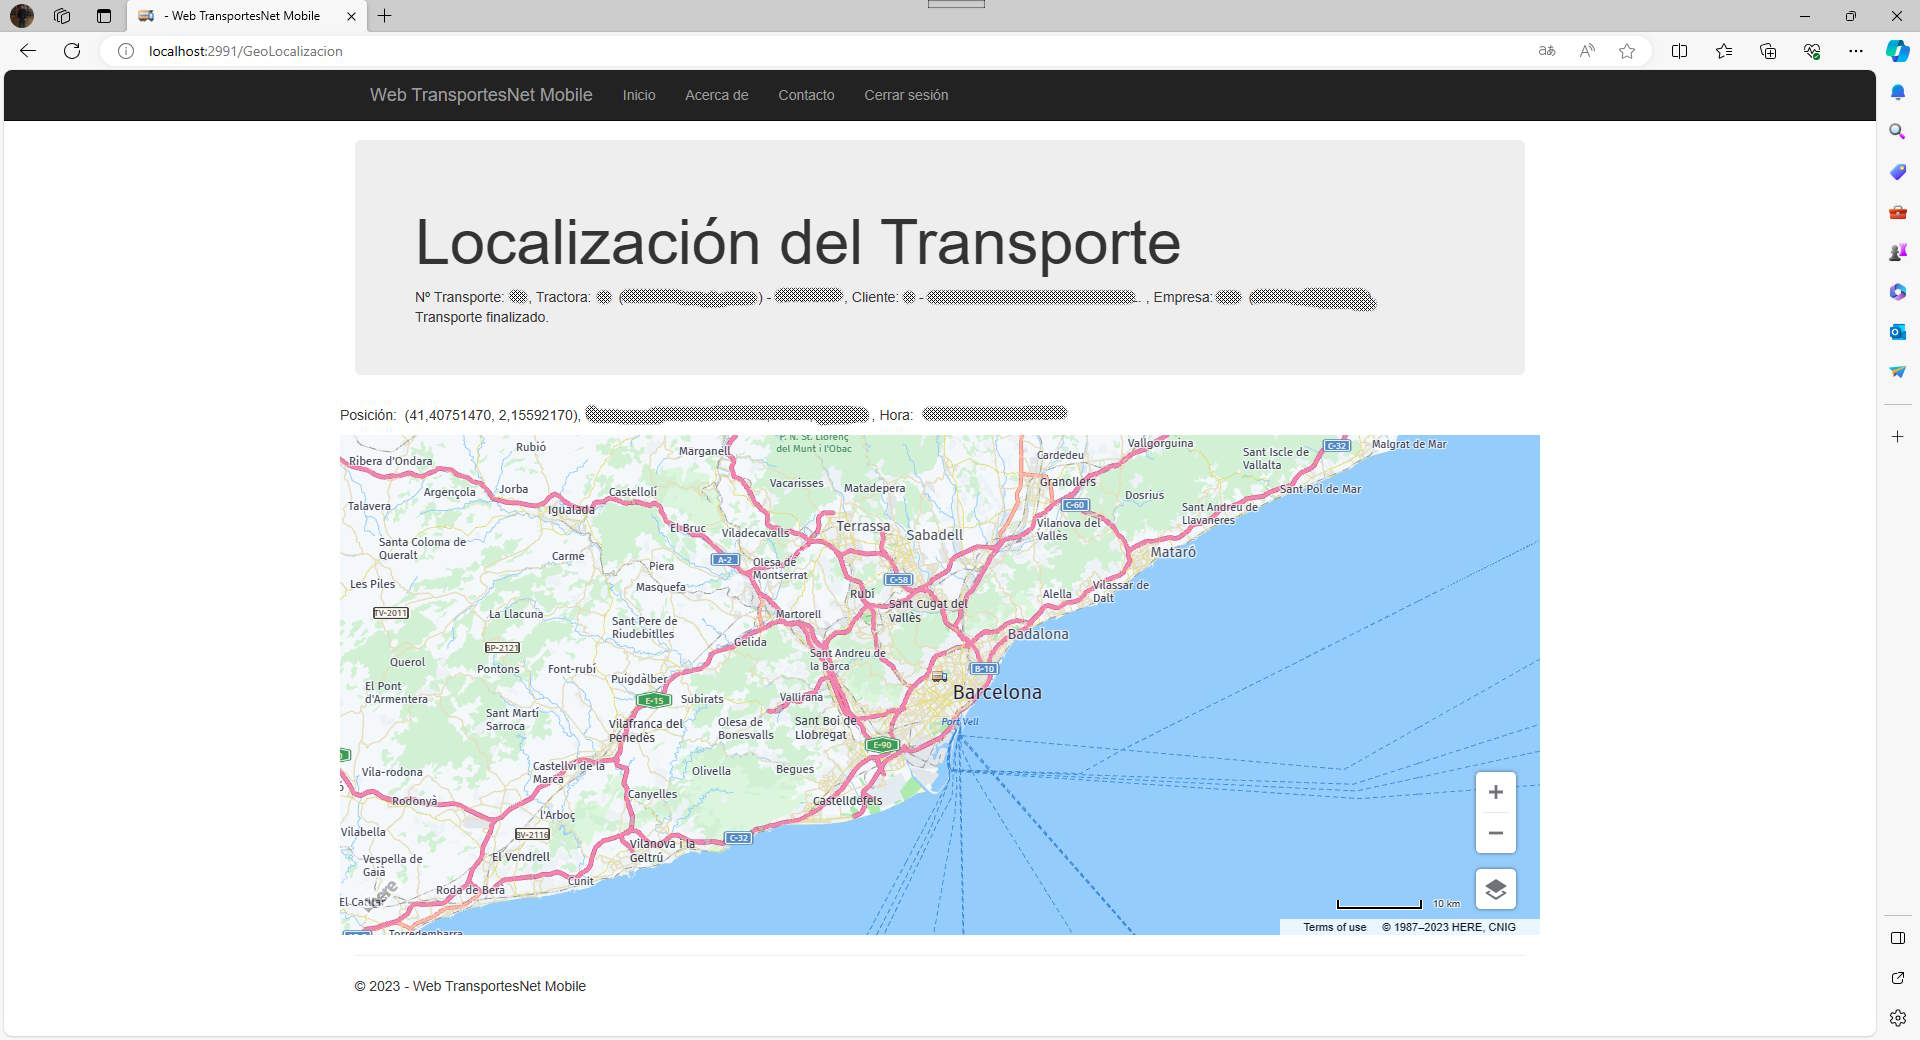 Web del Cliente - Localización en TransportesNet Mobile versión 1.0.2